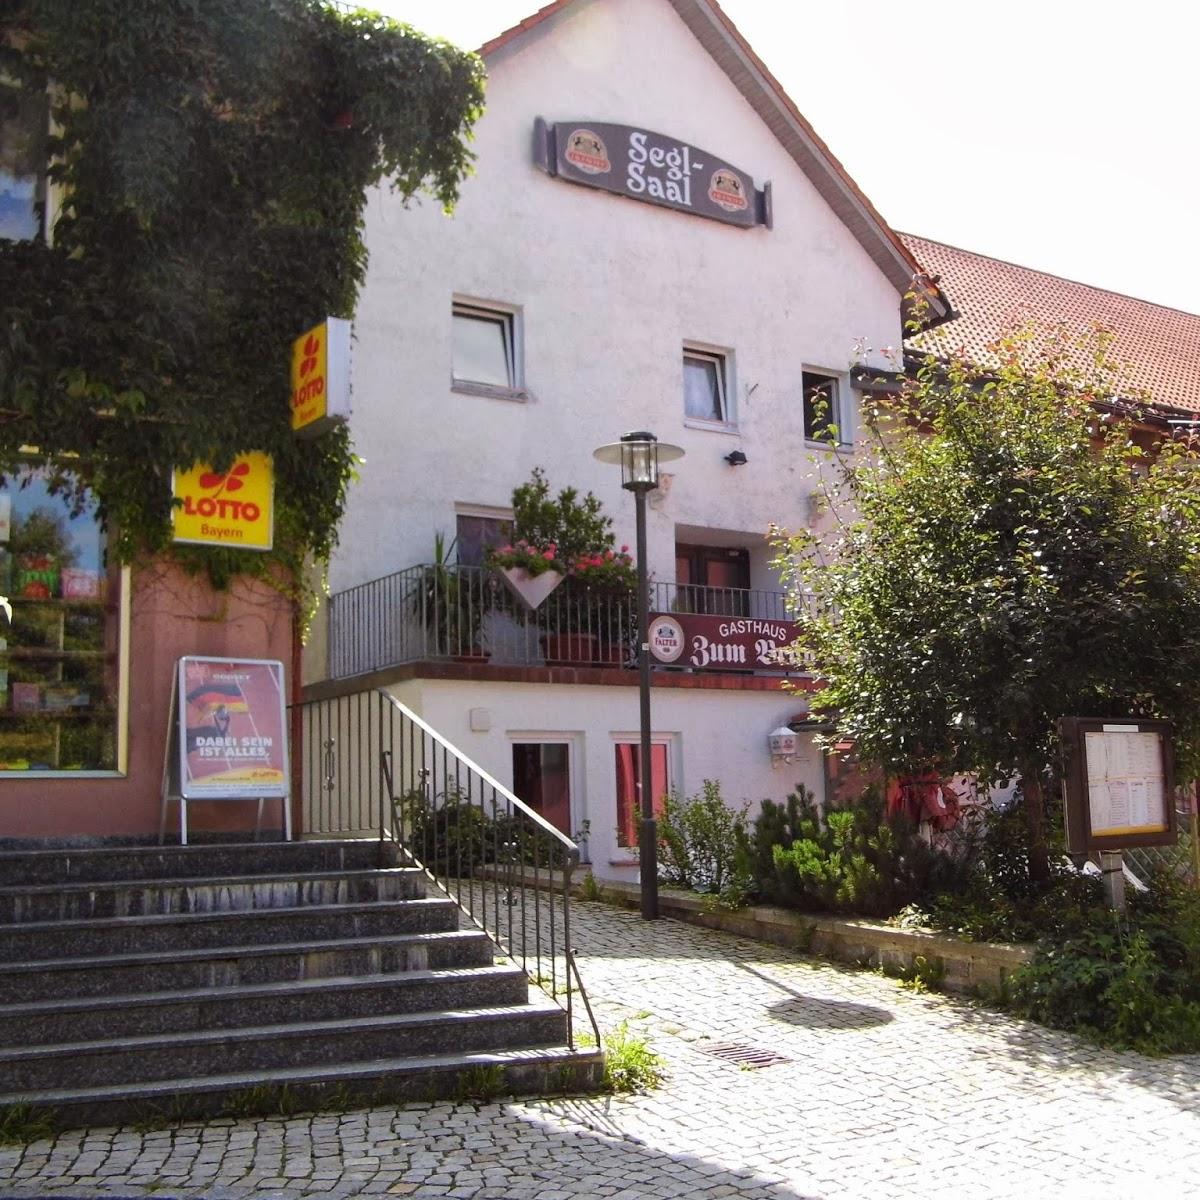 Restaurant "Gasthaus zum Bräu" in Ruhmannsfelden